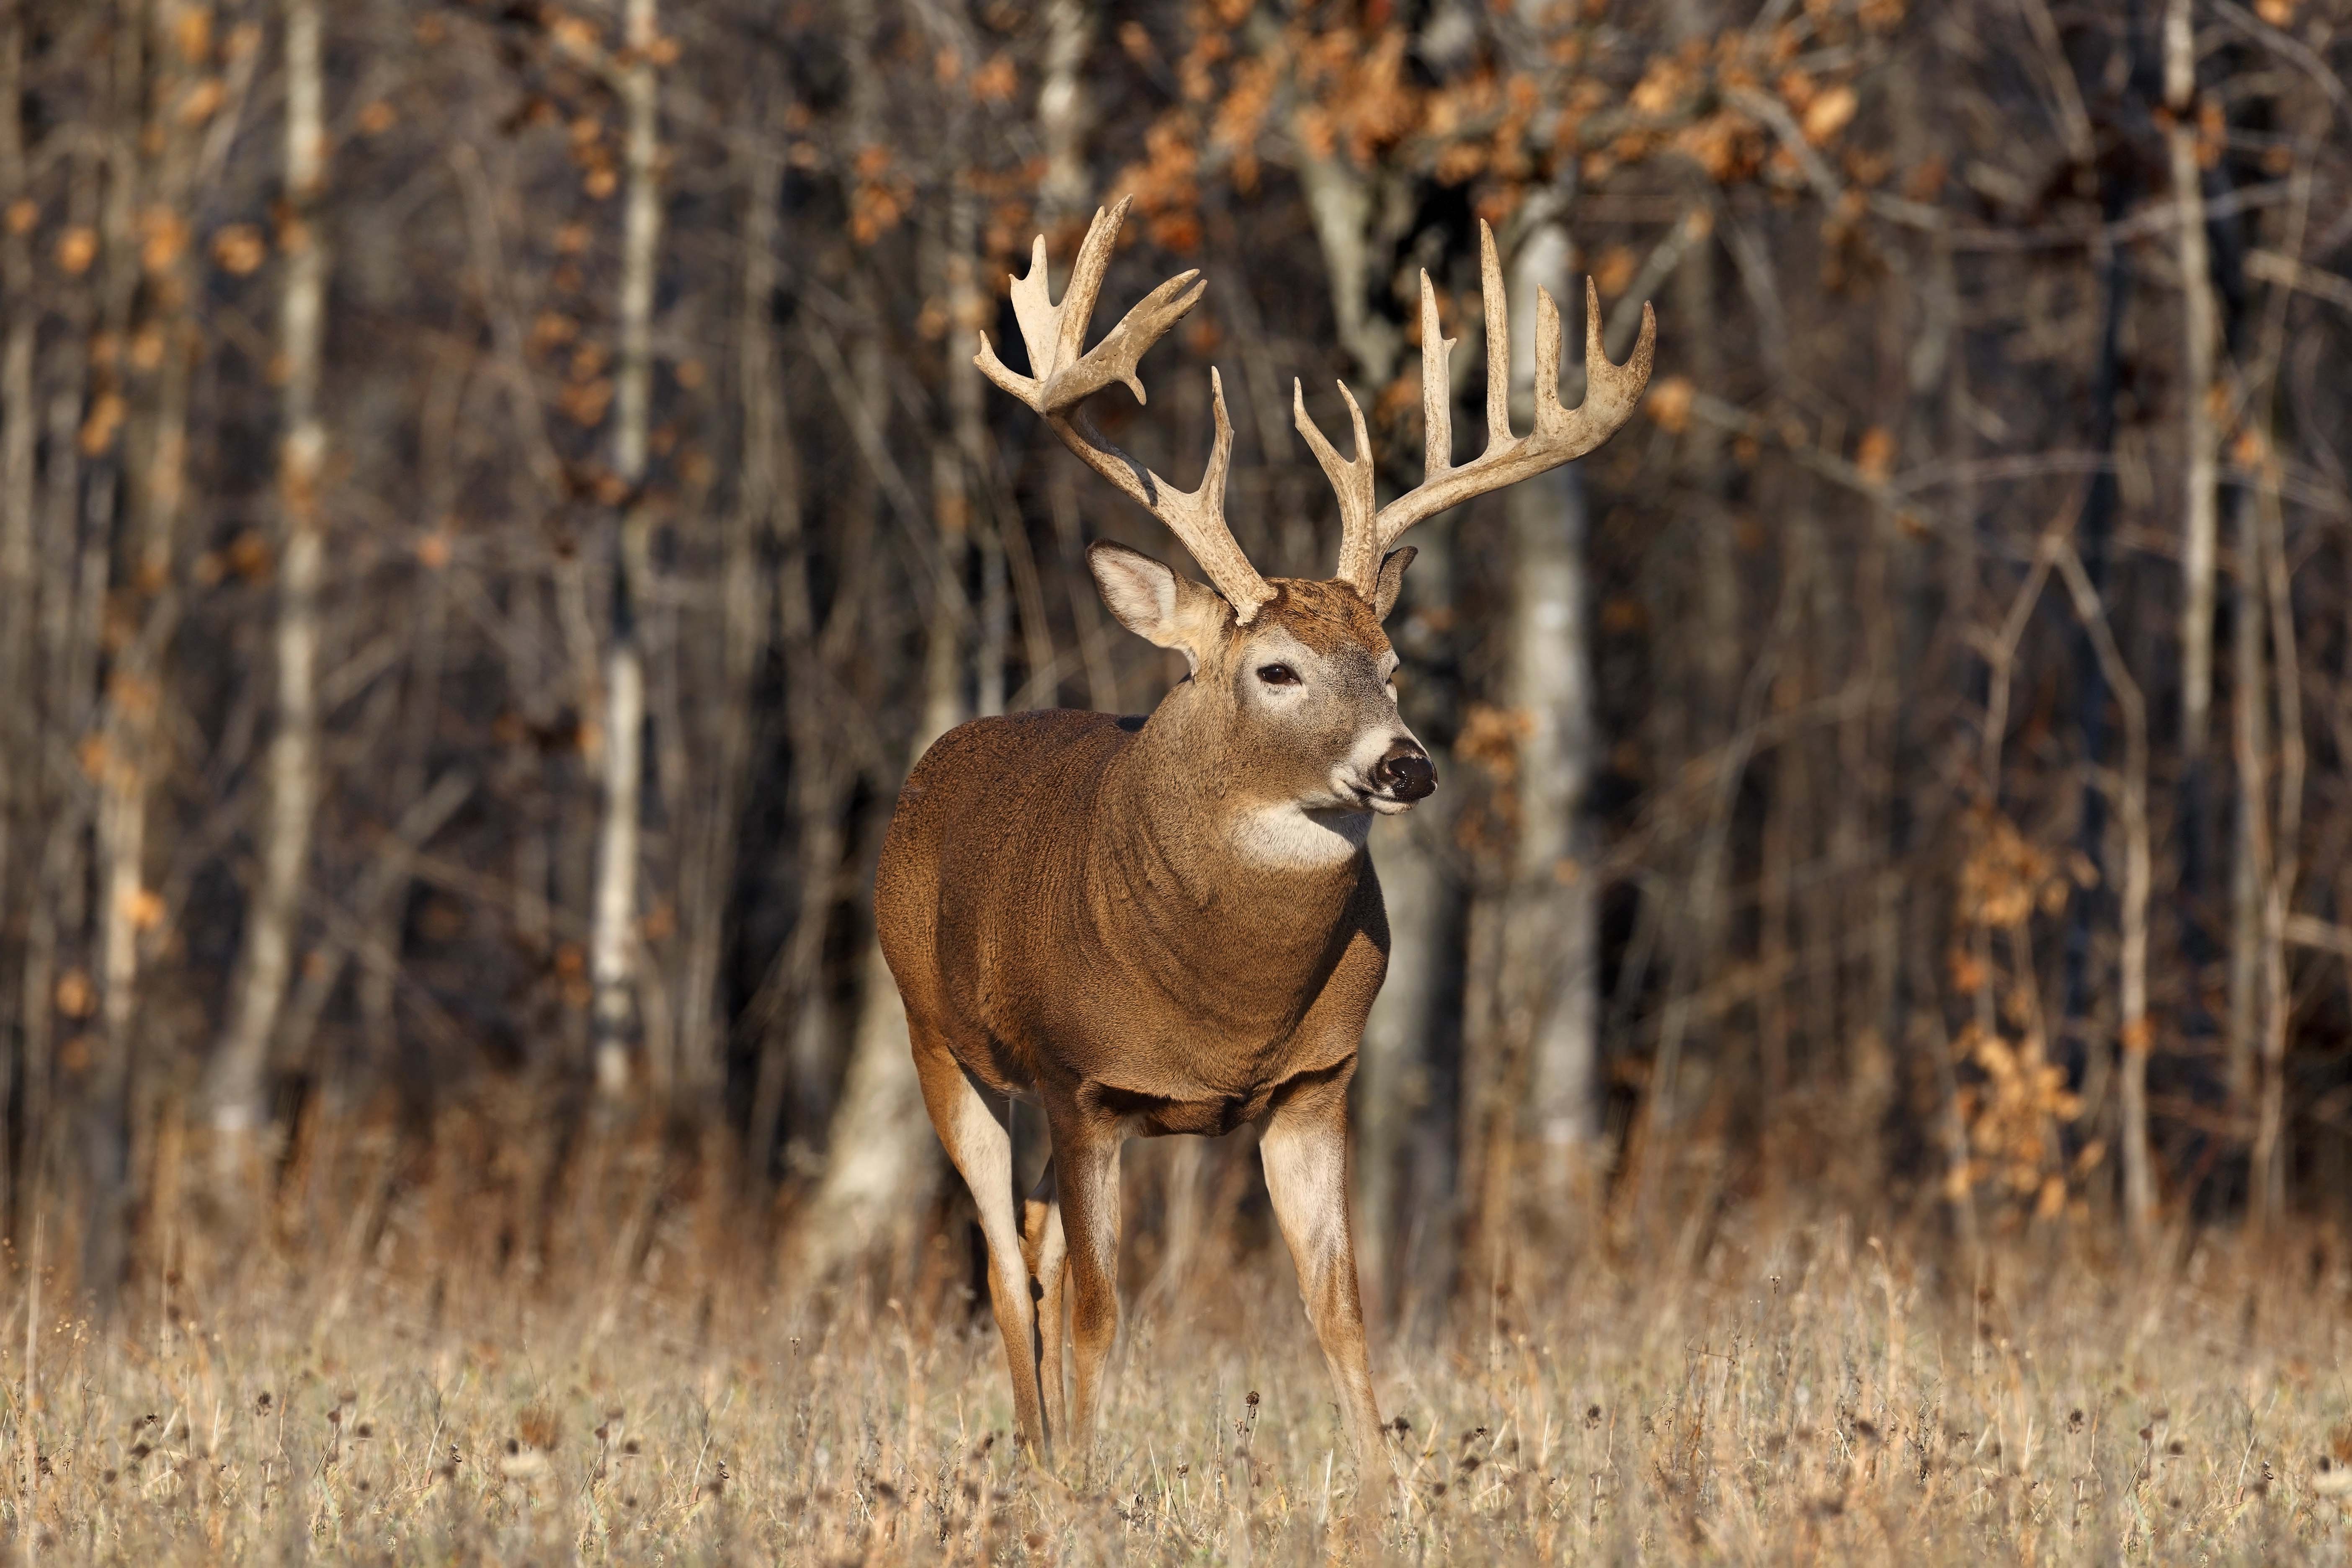 wildlife, deer - desktop wallpaper